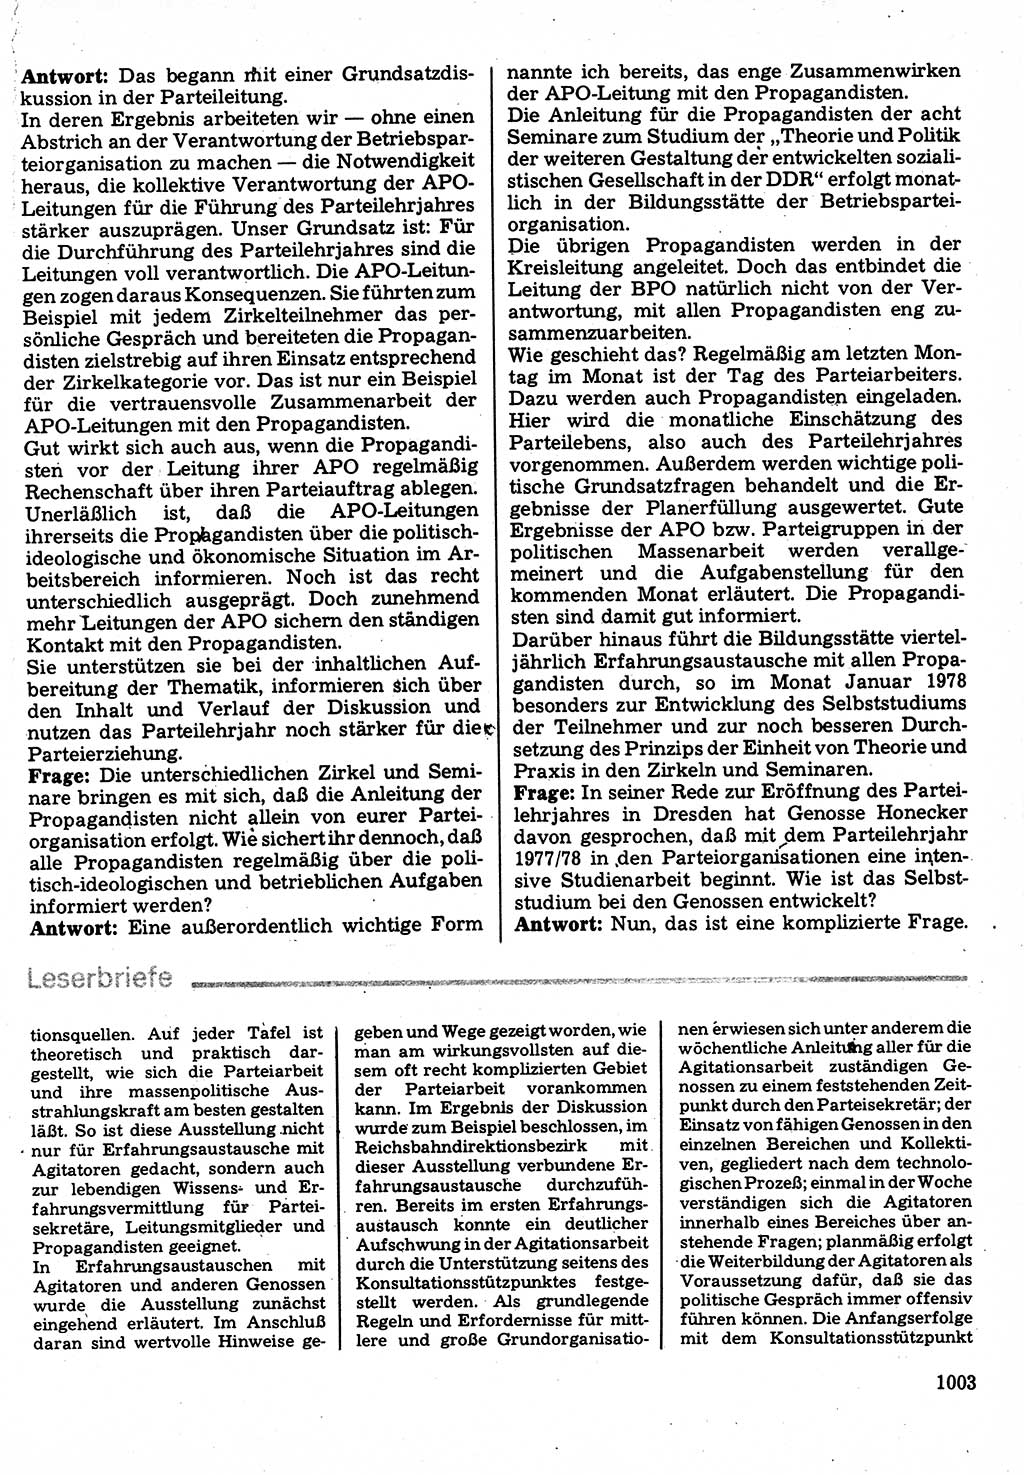 Neuer Weg (NW), Organ des Zentralkomitees (ZK) der SED (Sozialistische Einheitspartei Deutschlands) für Fragen des Parteilebens, 32. Jahrgang [Deutsche Demokratische Republik (DDR)] 1977, Seite 1003 (NW ZK SED DDR 1977, S. 1003)